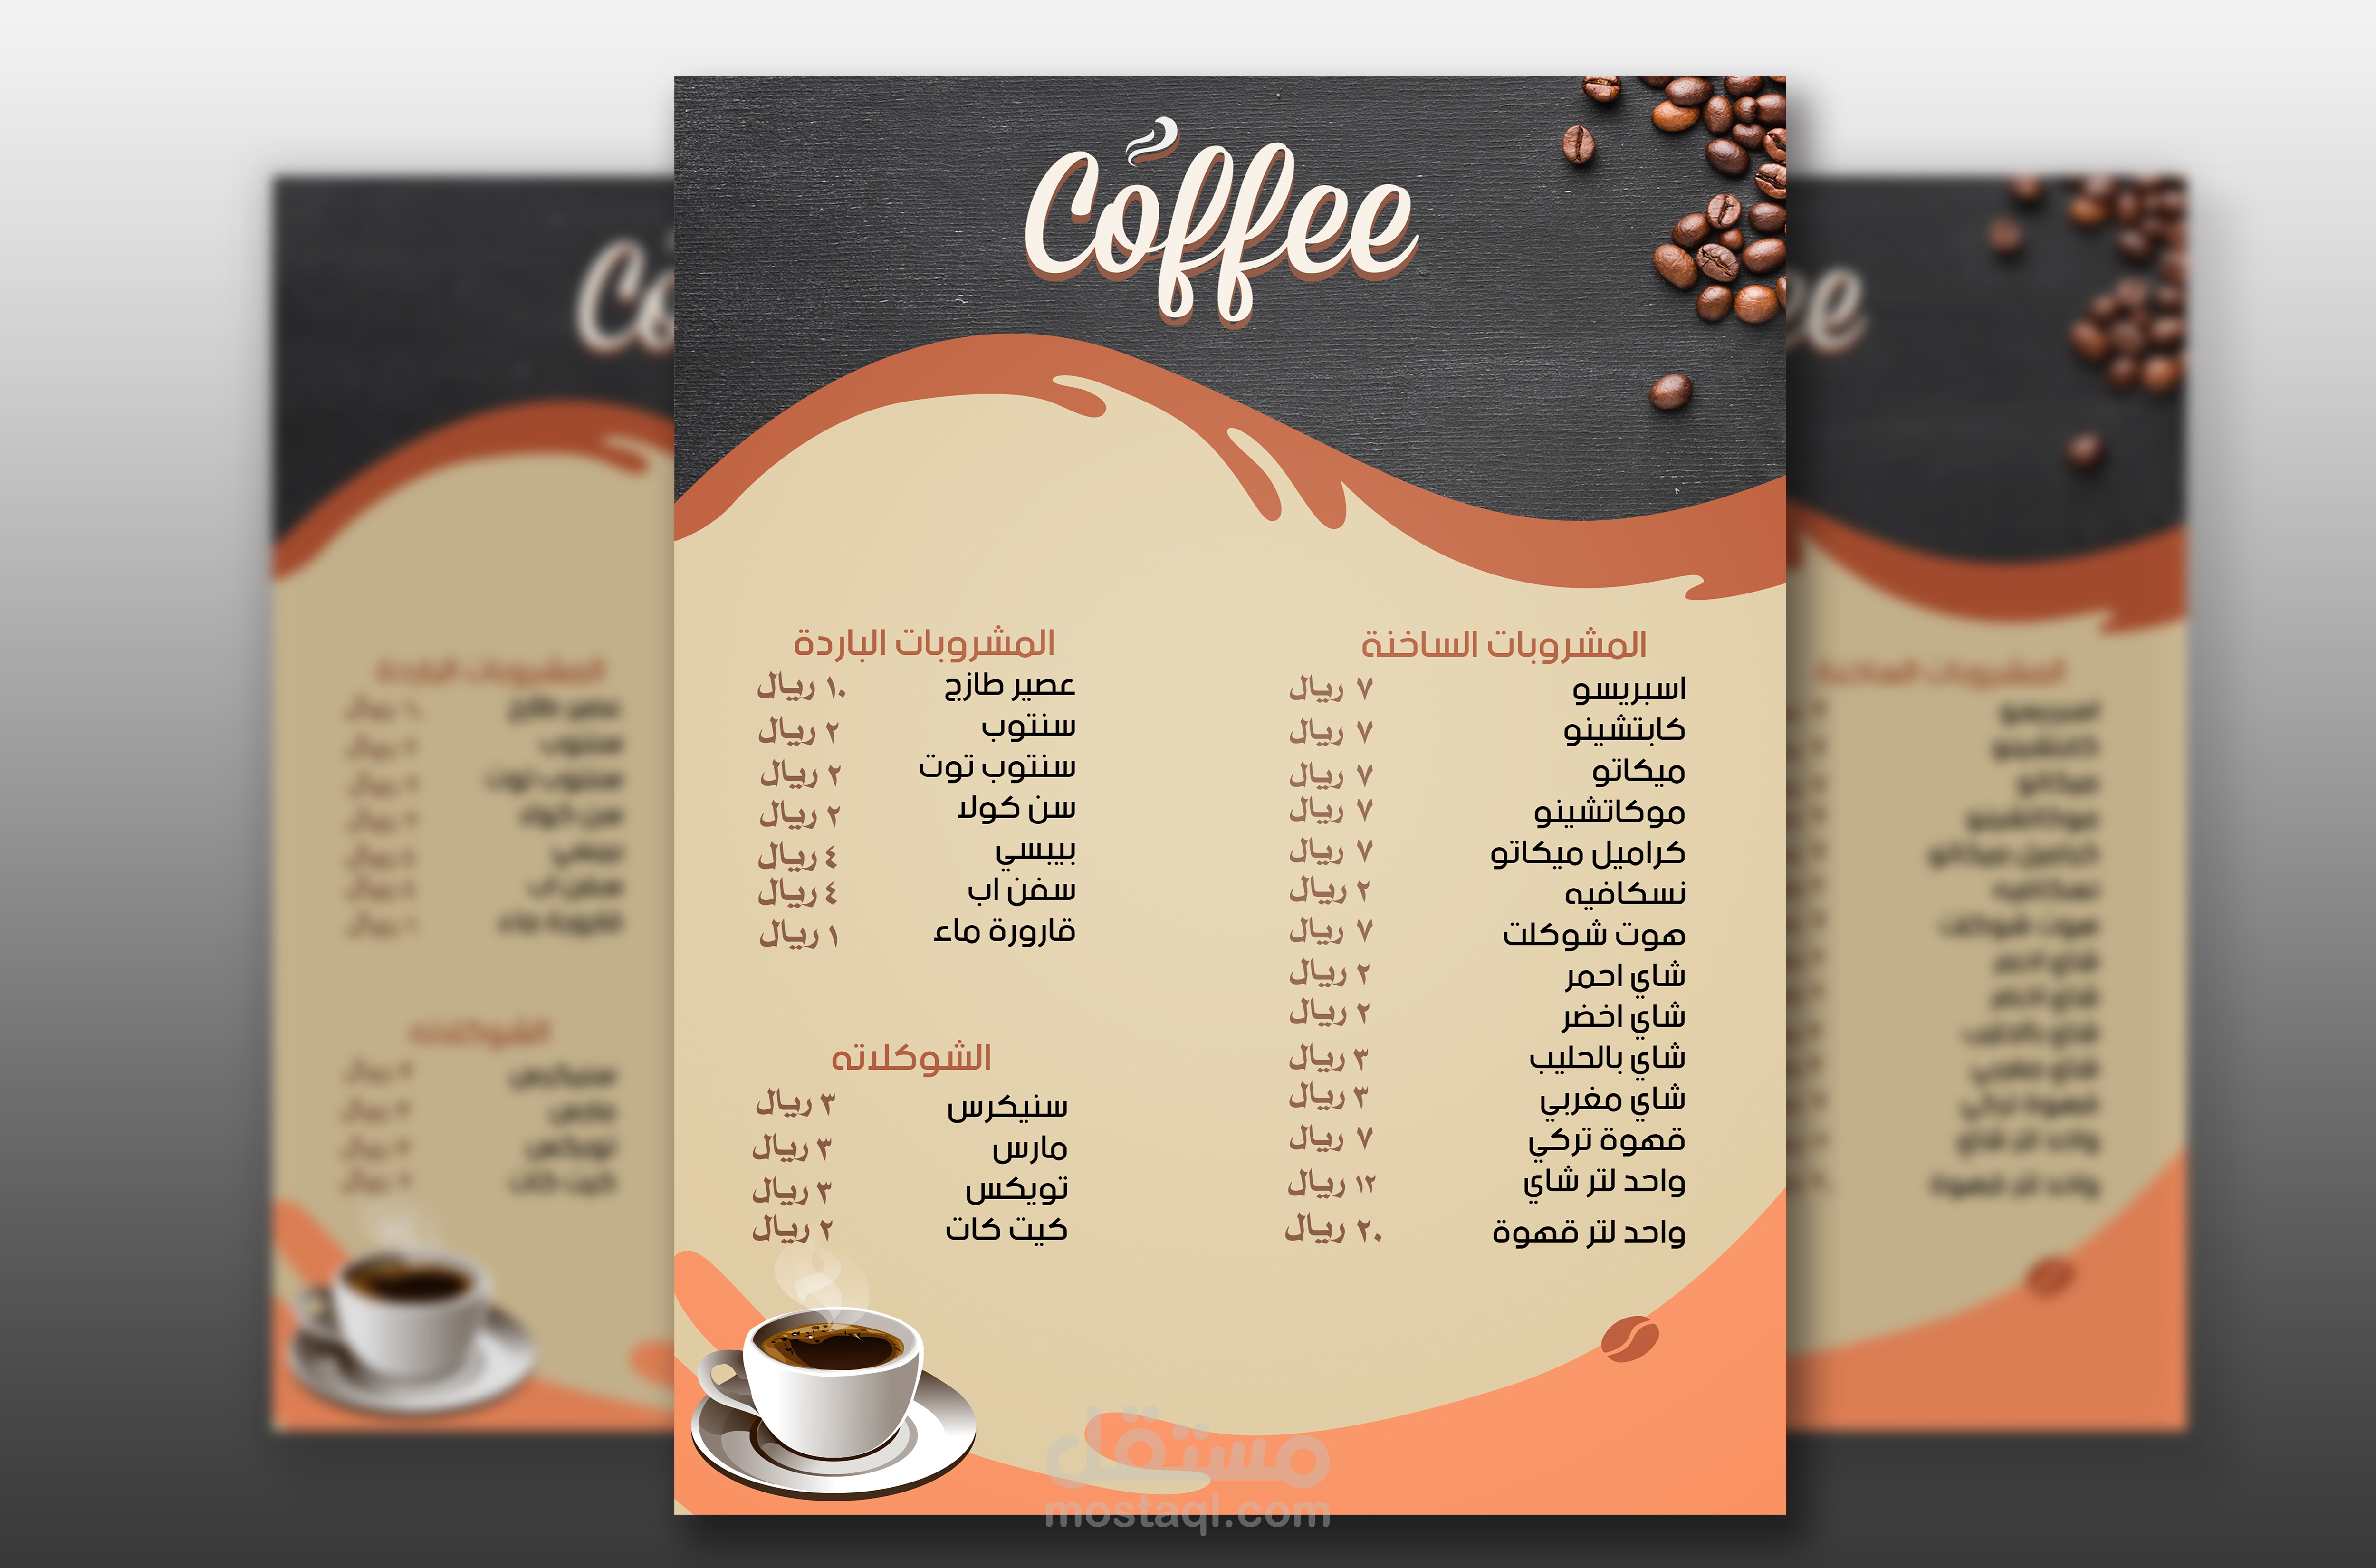 تصميم قائمة طعام أو قائمة مشروبات ( Menu ) عربي + انجليزي مستقل